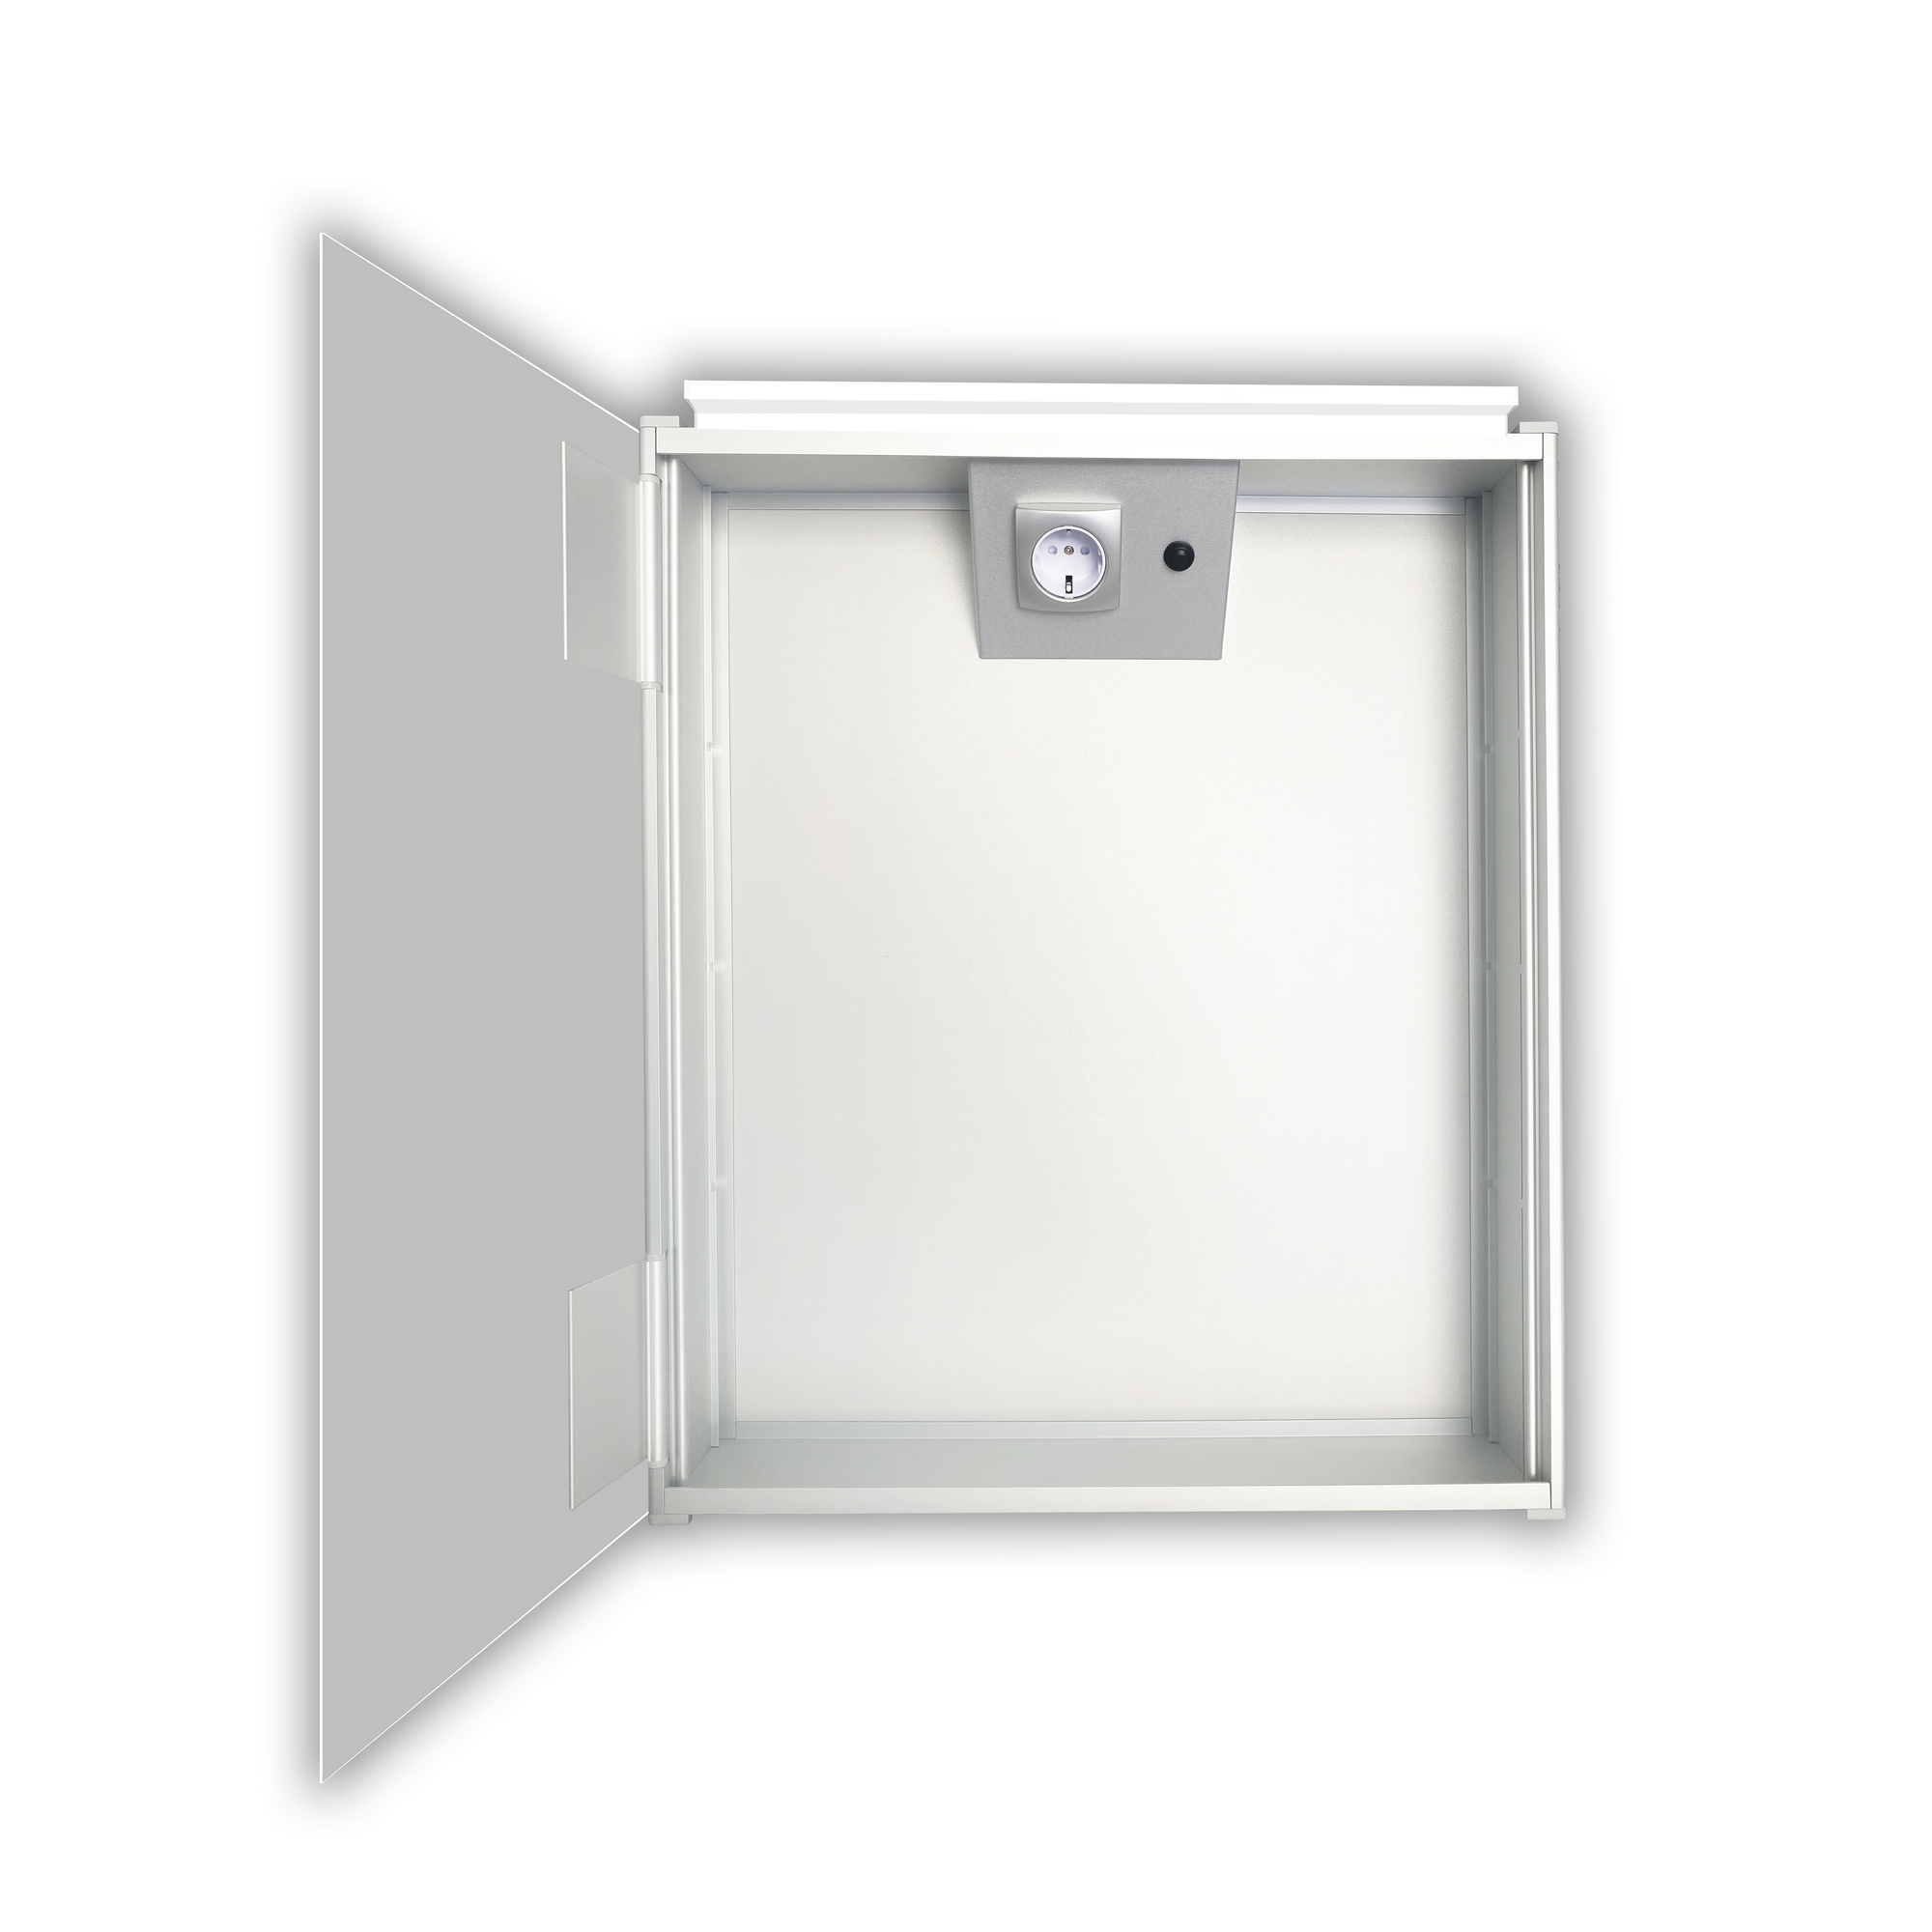 LED-Spiegelschrank 'Aluminio Vegas' 50 x 60 x 11,2 cm + product picture